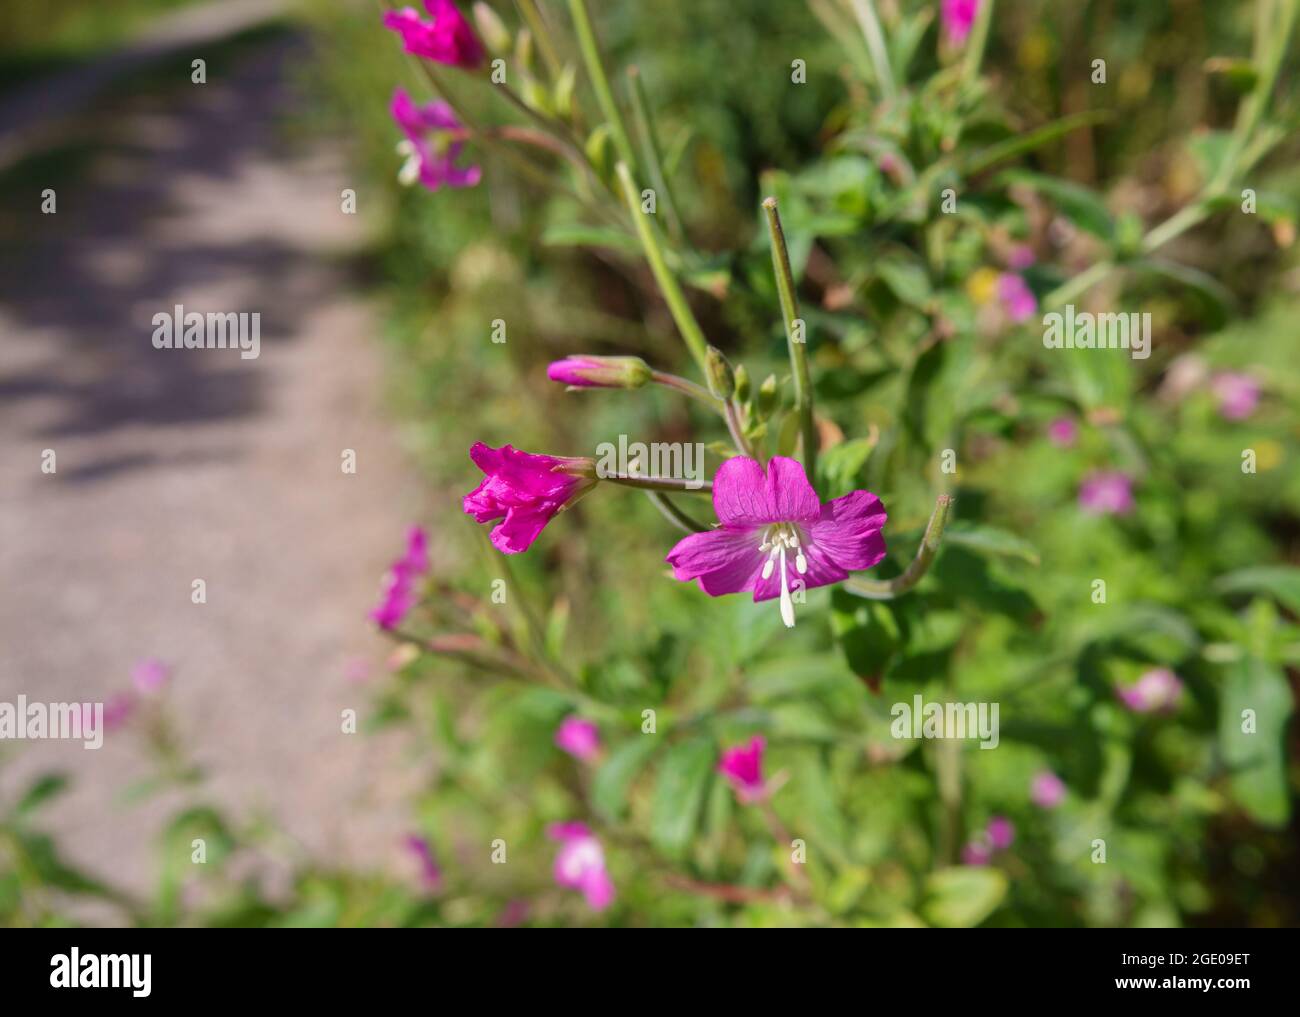 close up of the beautiful Hairy Willow flower (Epilobium hirsutum) in summer sunshine Stock Photo